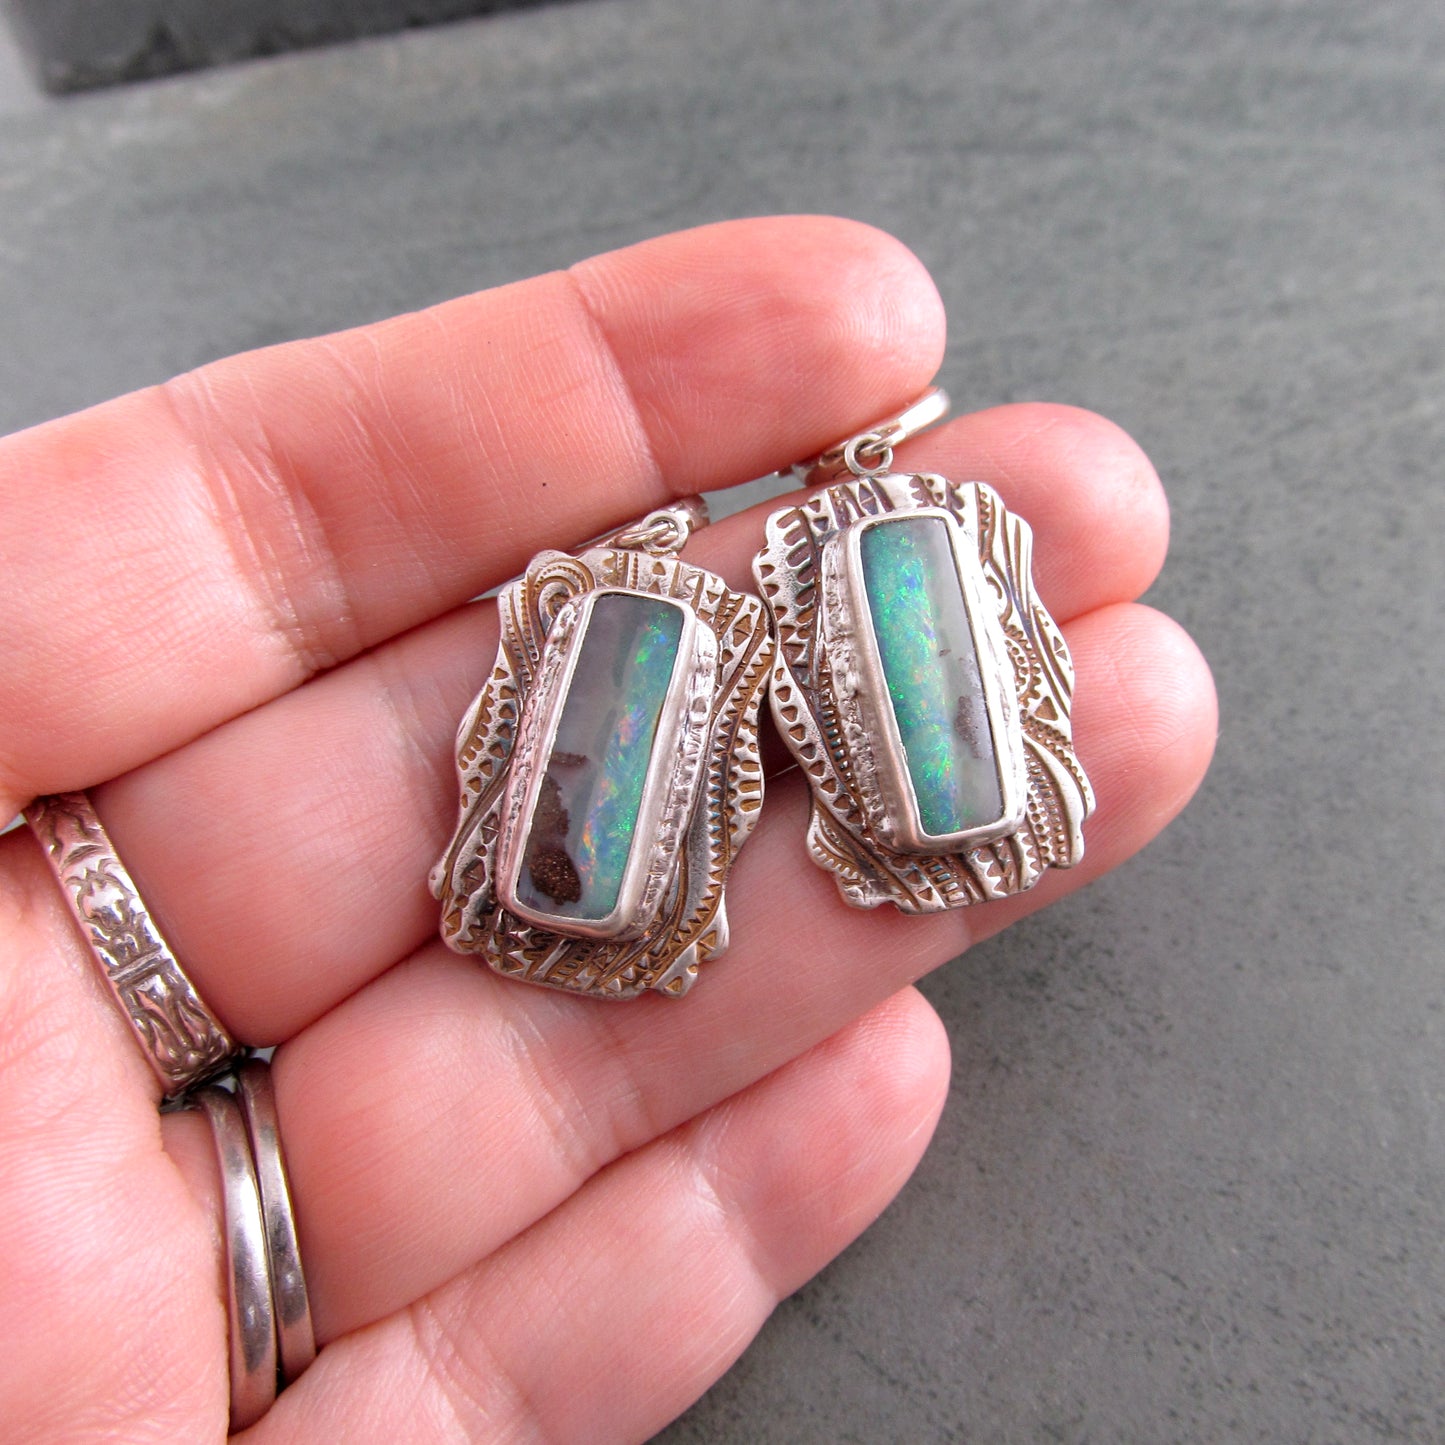 Australian opal earrings, handmade recycled fine silver earrings